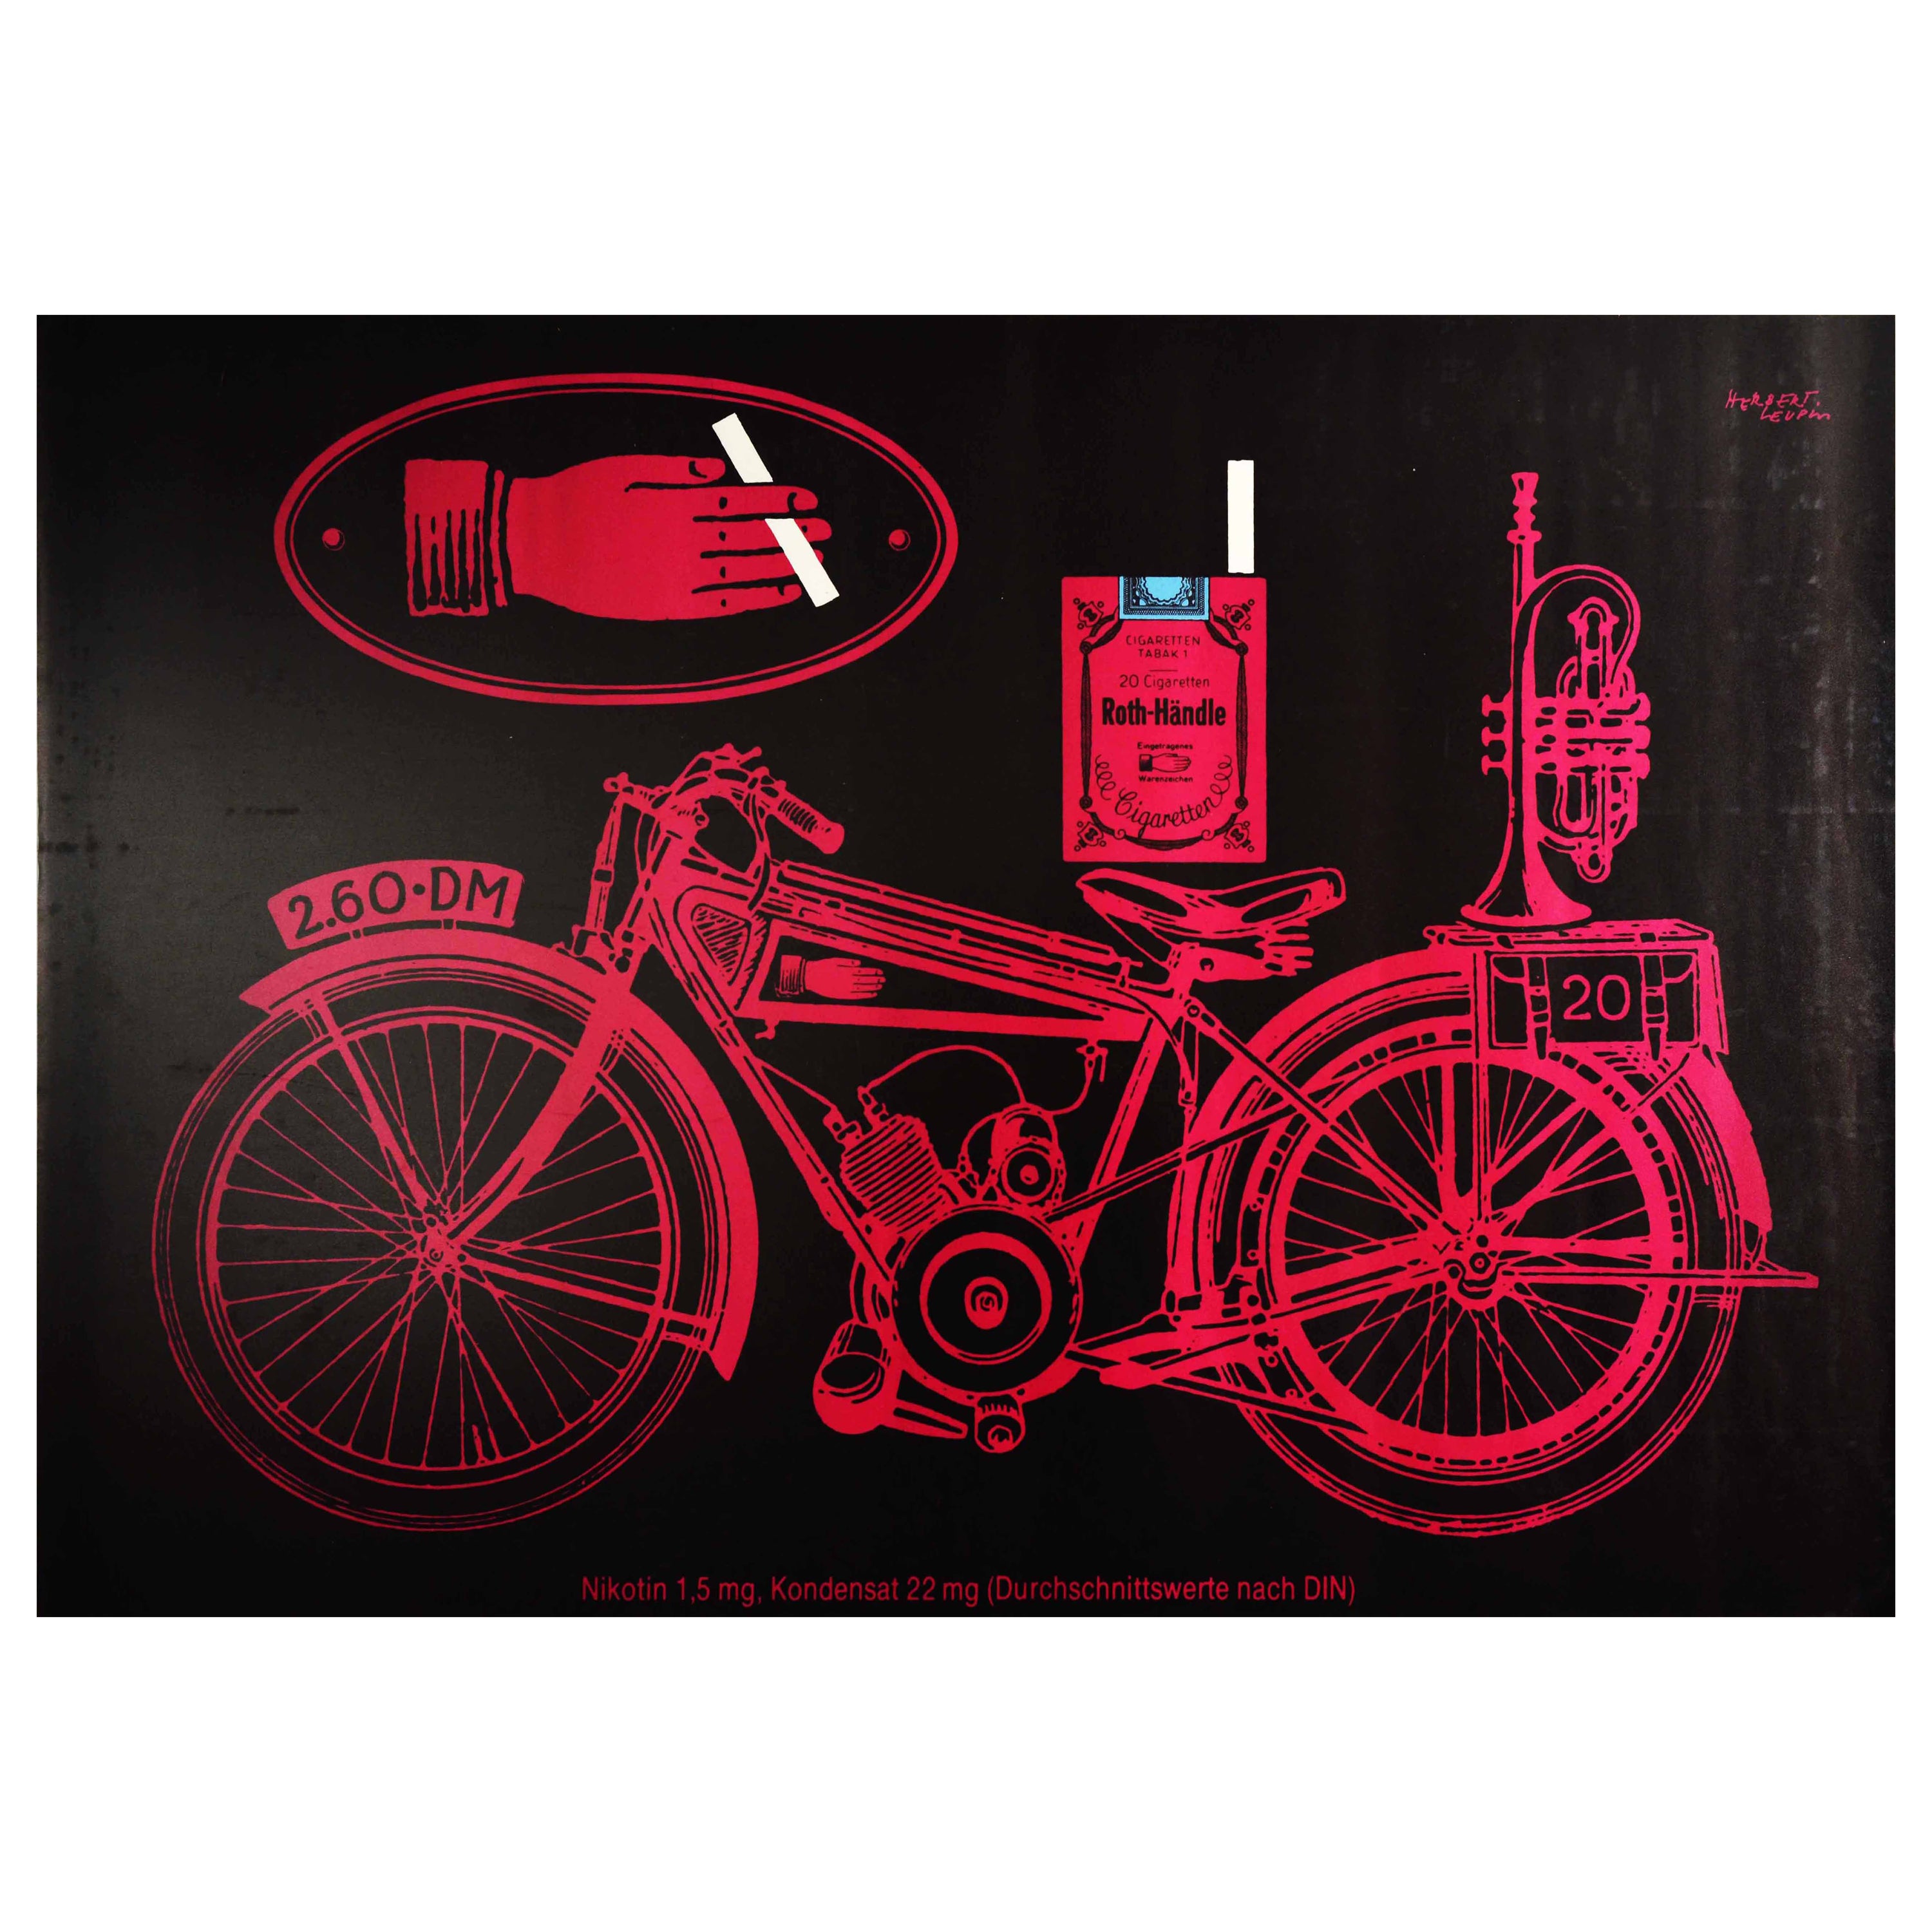 Original Vintage-Poster, Roth-Griff, Zigarren, Tabak, Rauch, Motorrad, Design